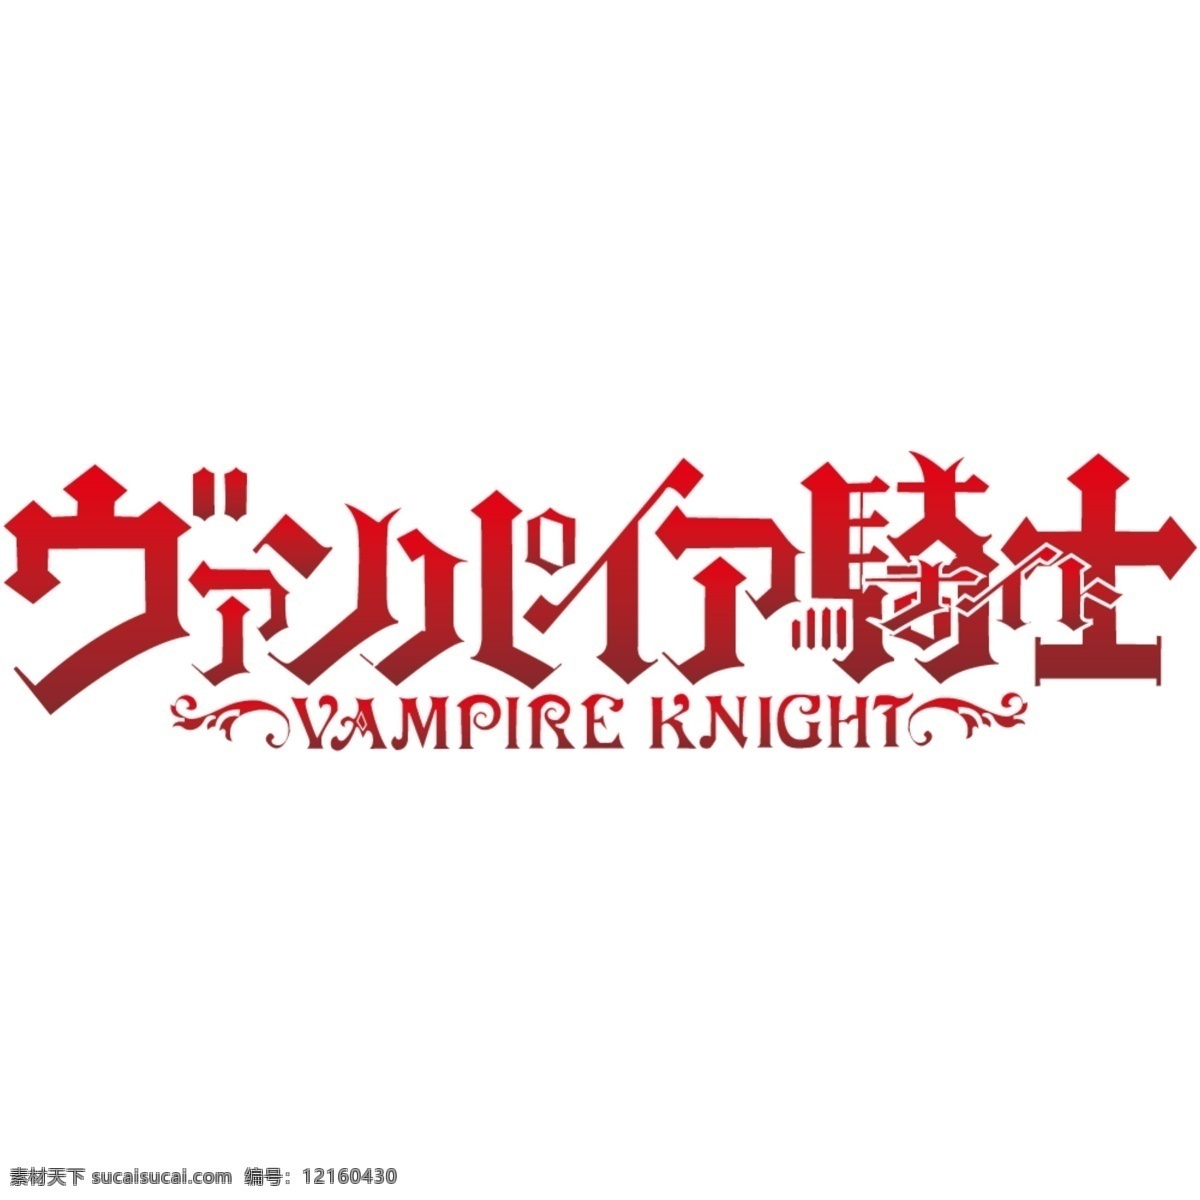 vampire 漫画 吸血鬼骑士 knight capriccio 矢量图 其他矢量图